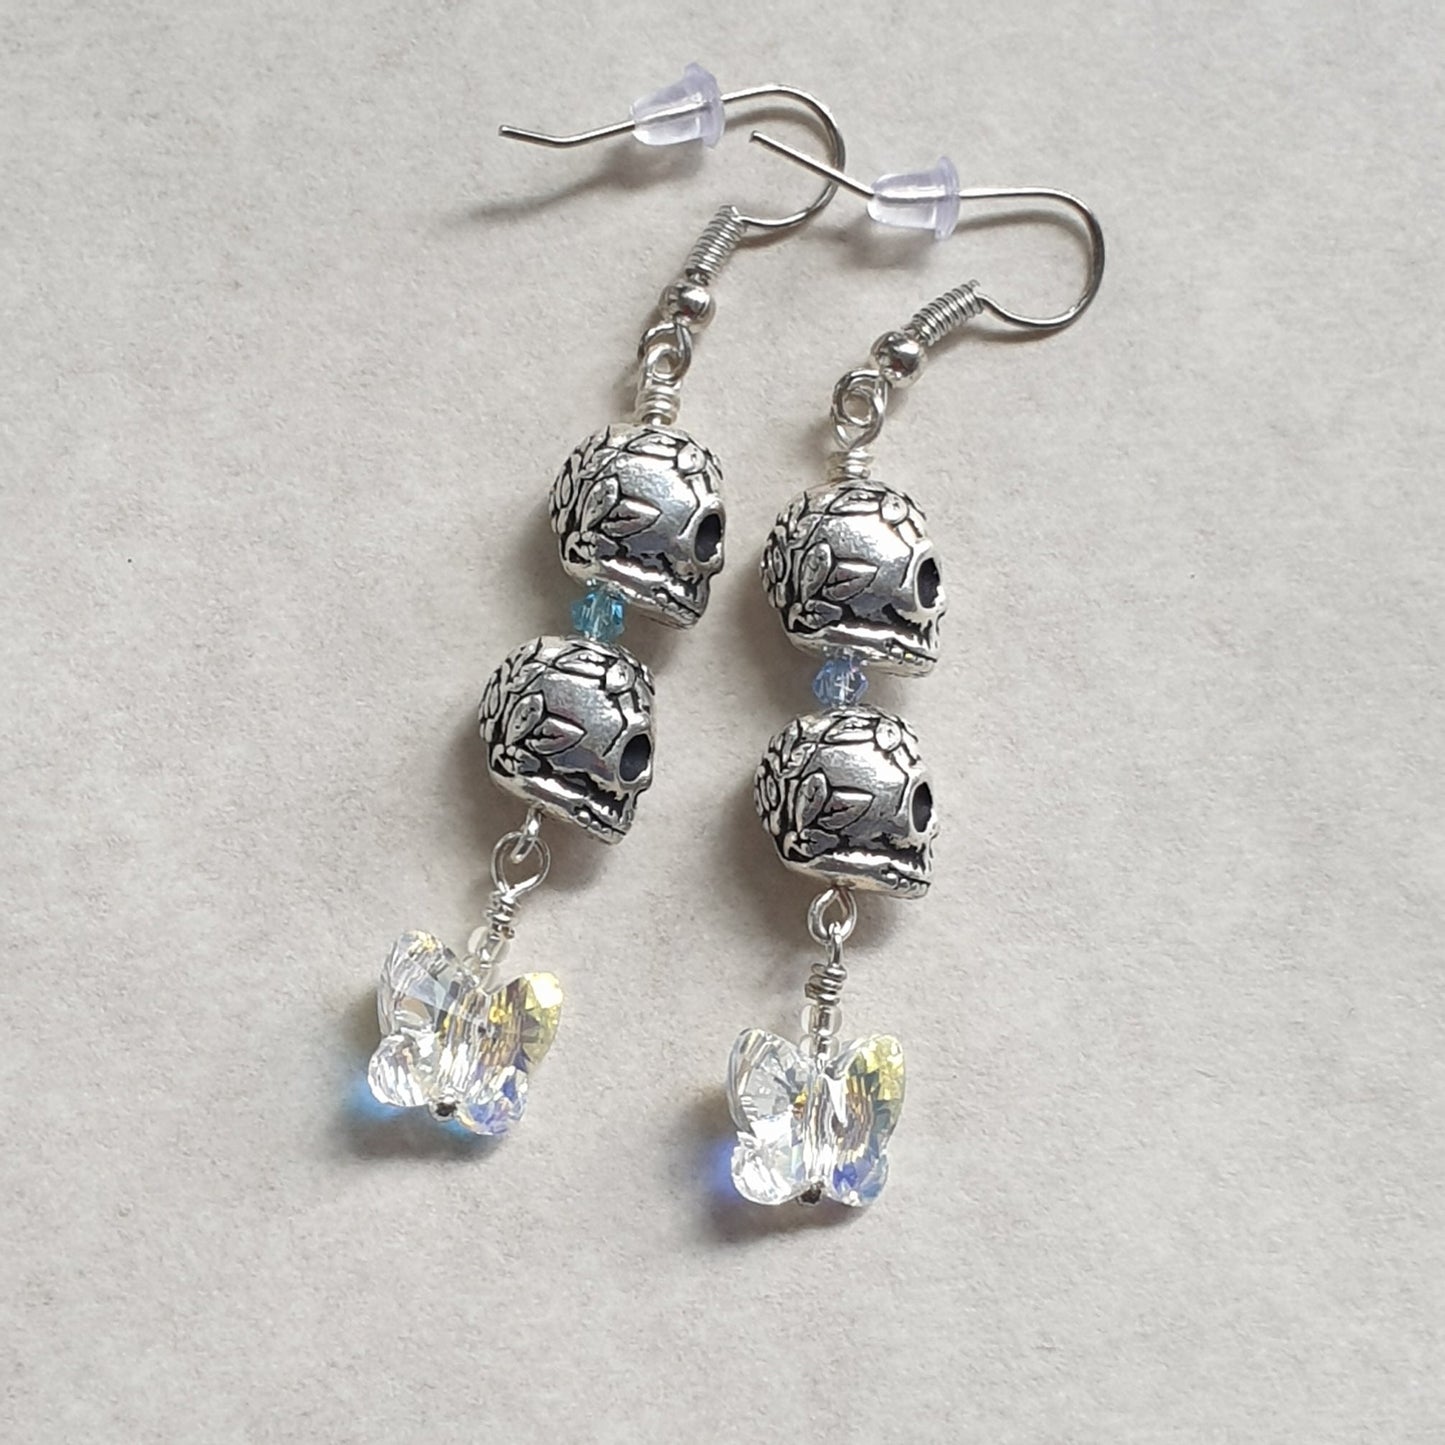 Metallic Sugar Skull and Czech Glass Butterfly earrings